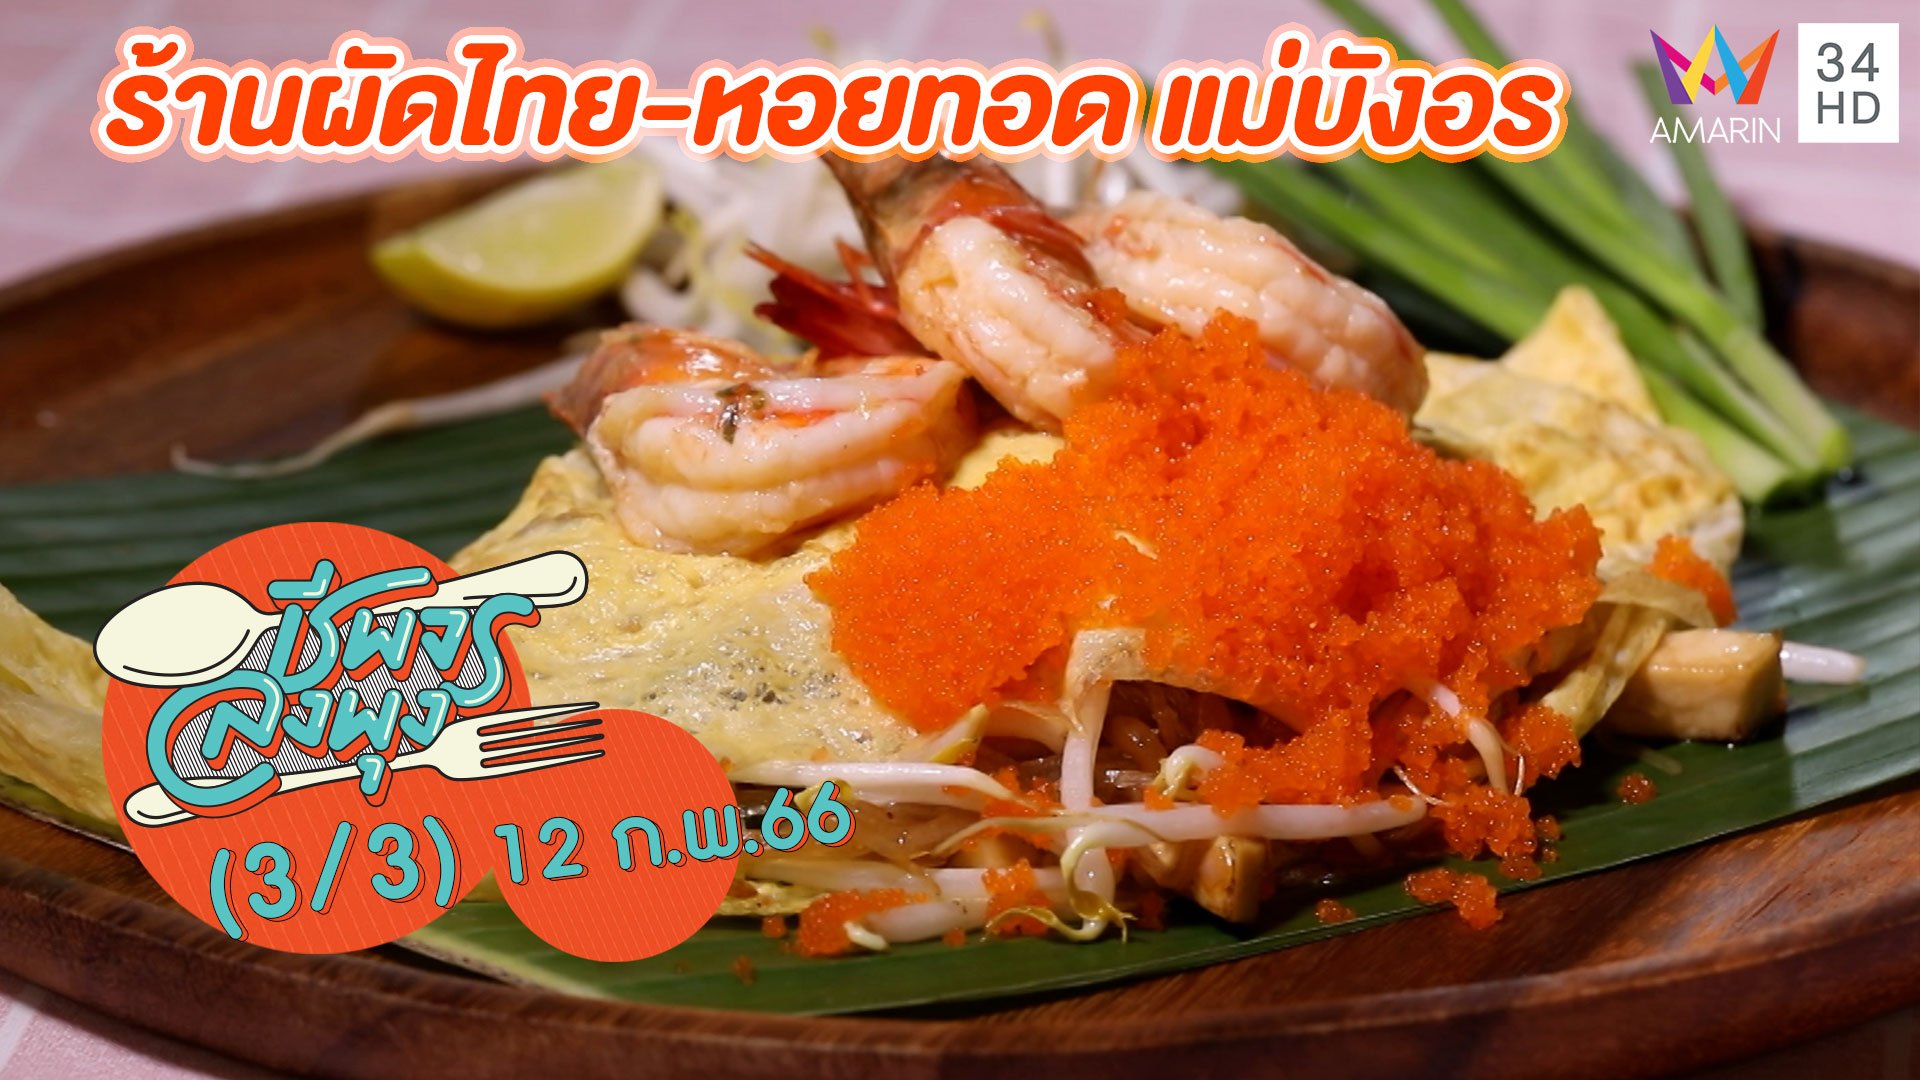 ผัดไทยสูตรโบราณ @ ร้านผัดไทย-หอยทอด แม่บังอร | ชีพจรลงพุง | 12 ก.พ. 66 (3/3) | AMARIN TVHD34